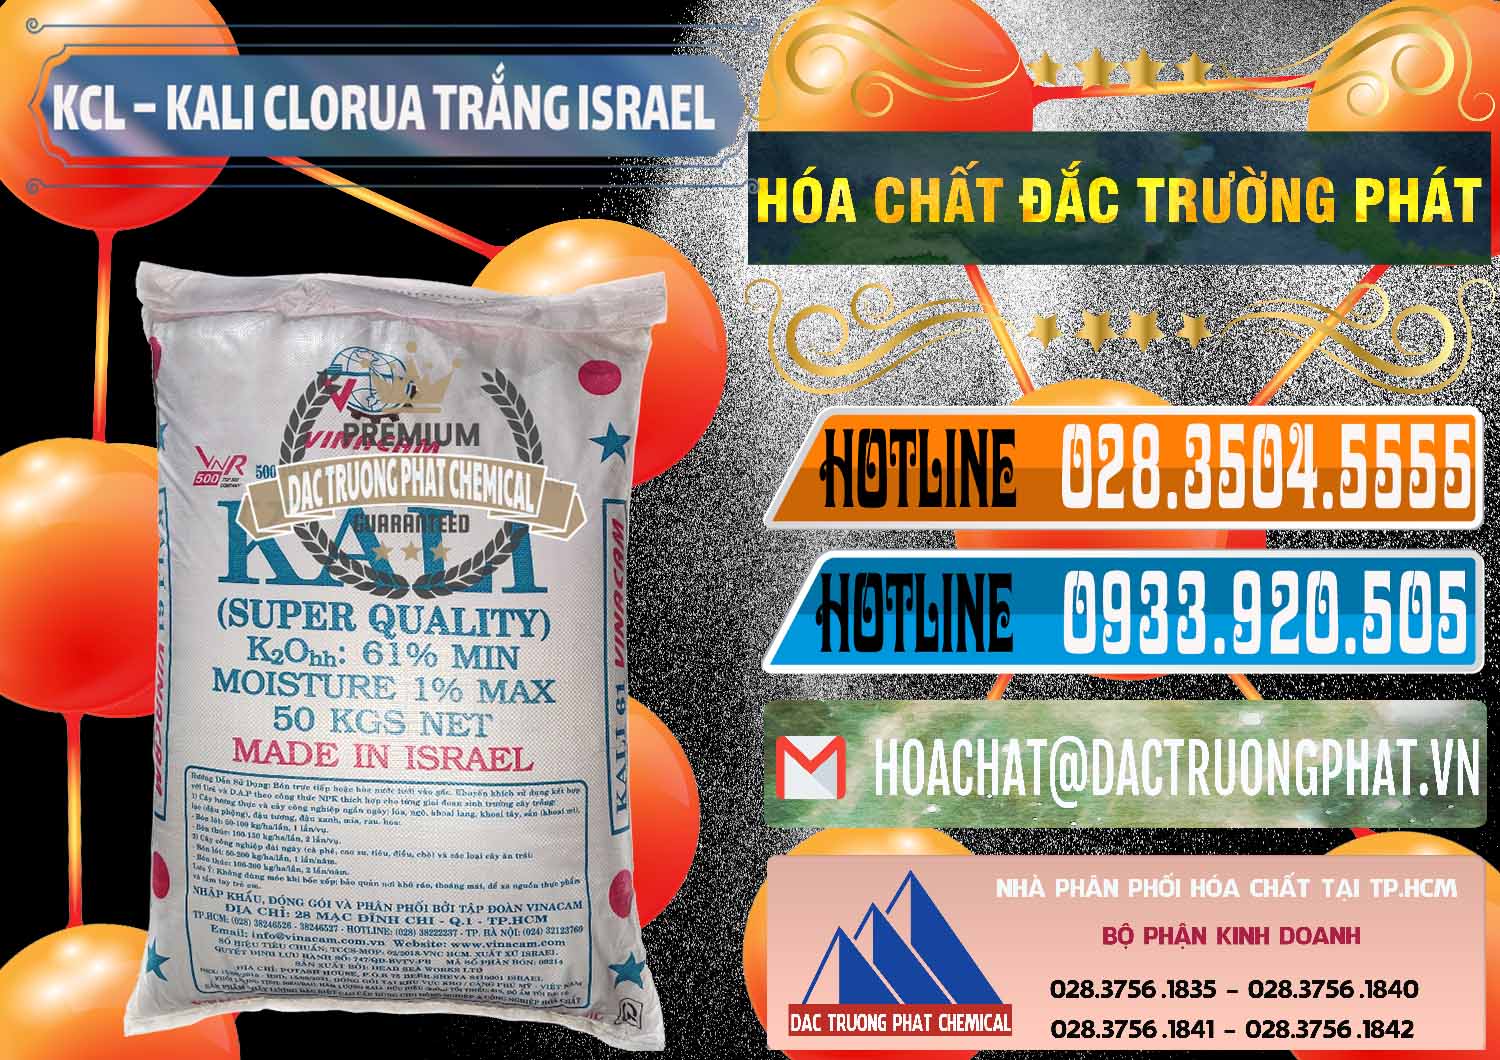 Chuyên kinh doanh và bán KCL – Kali Clorua Trắng Israel - 0087 - Đơn vị chuyên kinh doanh ( phân phối ) hóa chất tại TP.HCM - stmp.net